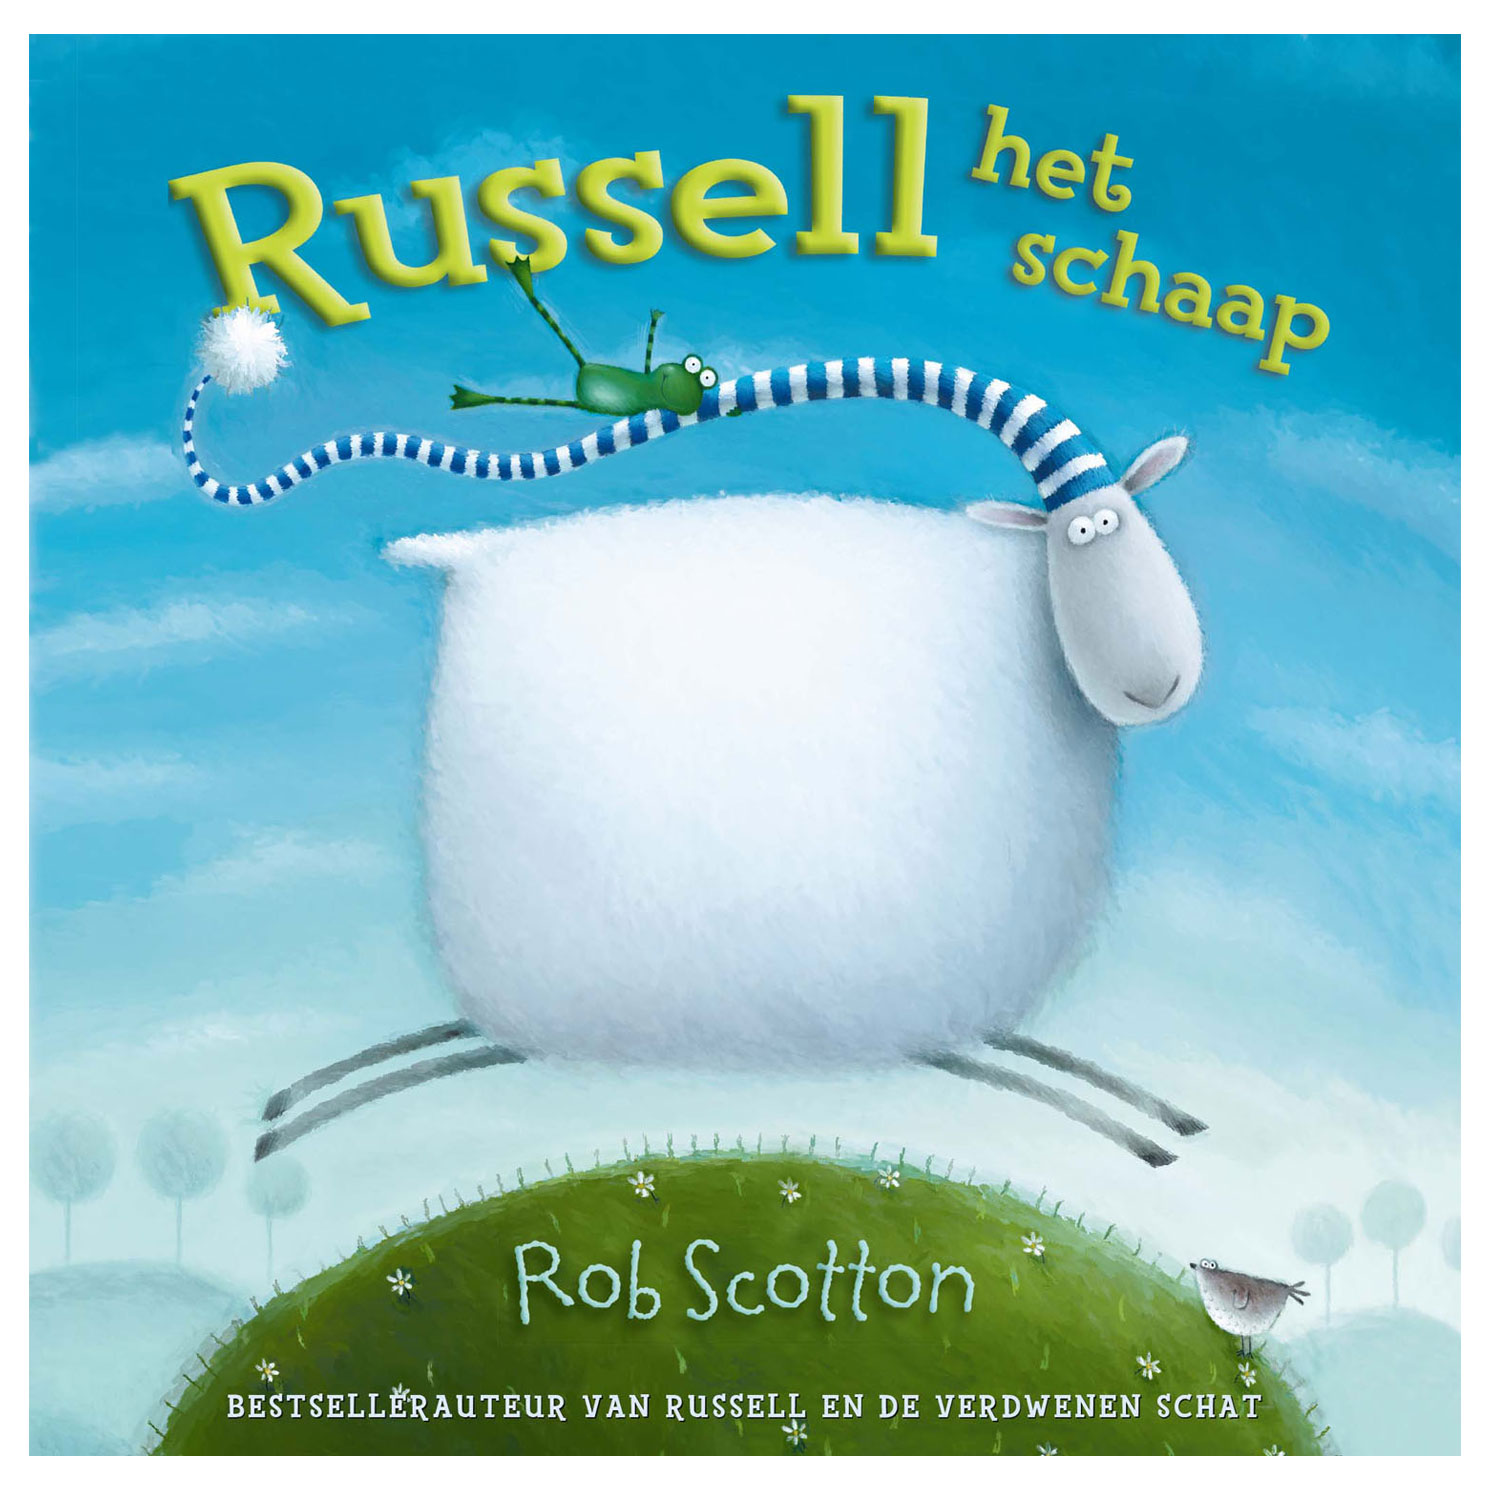 Russell het schaap